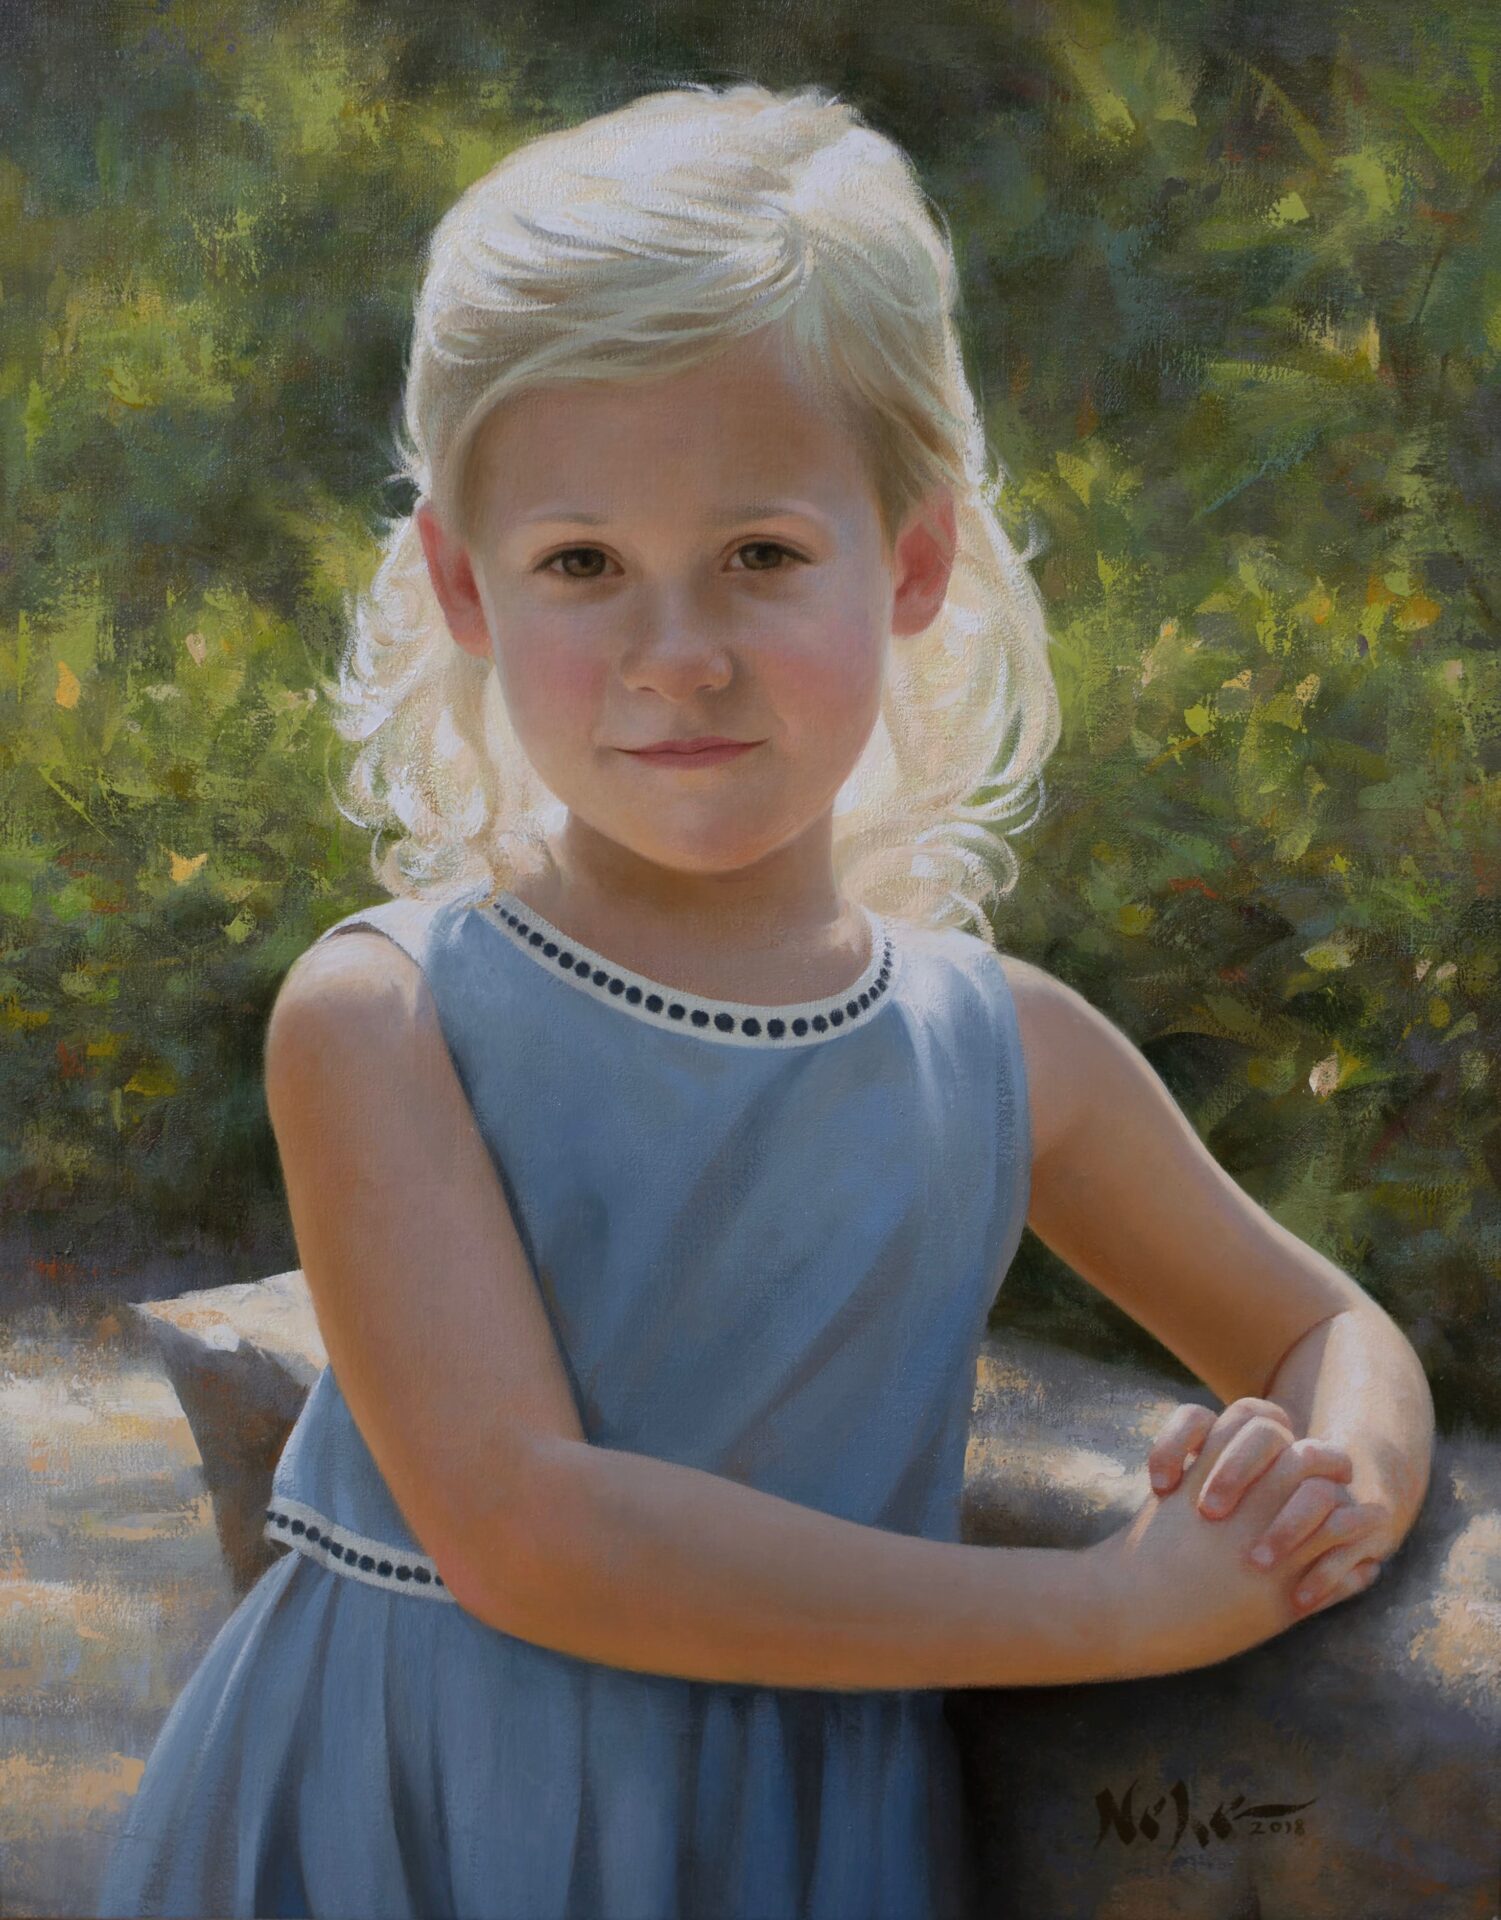 A child’s portrait painting